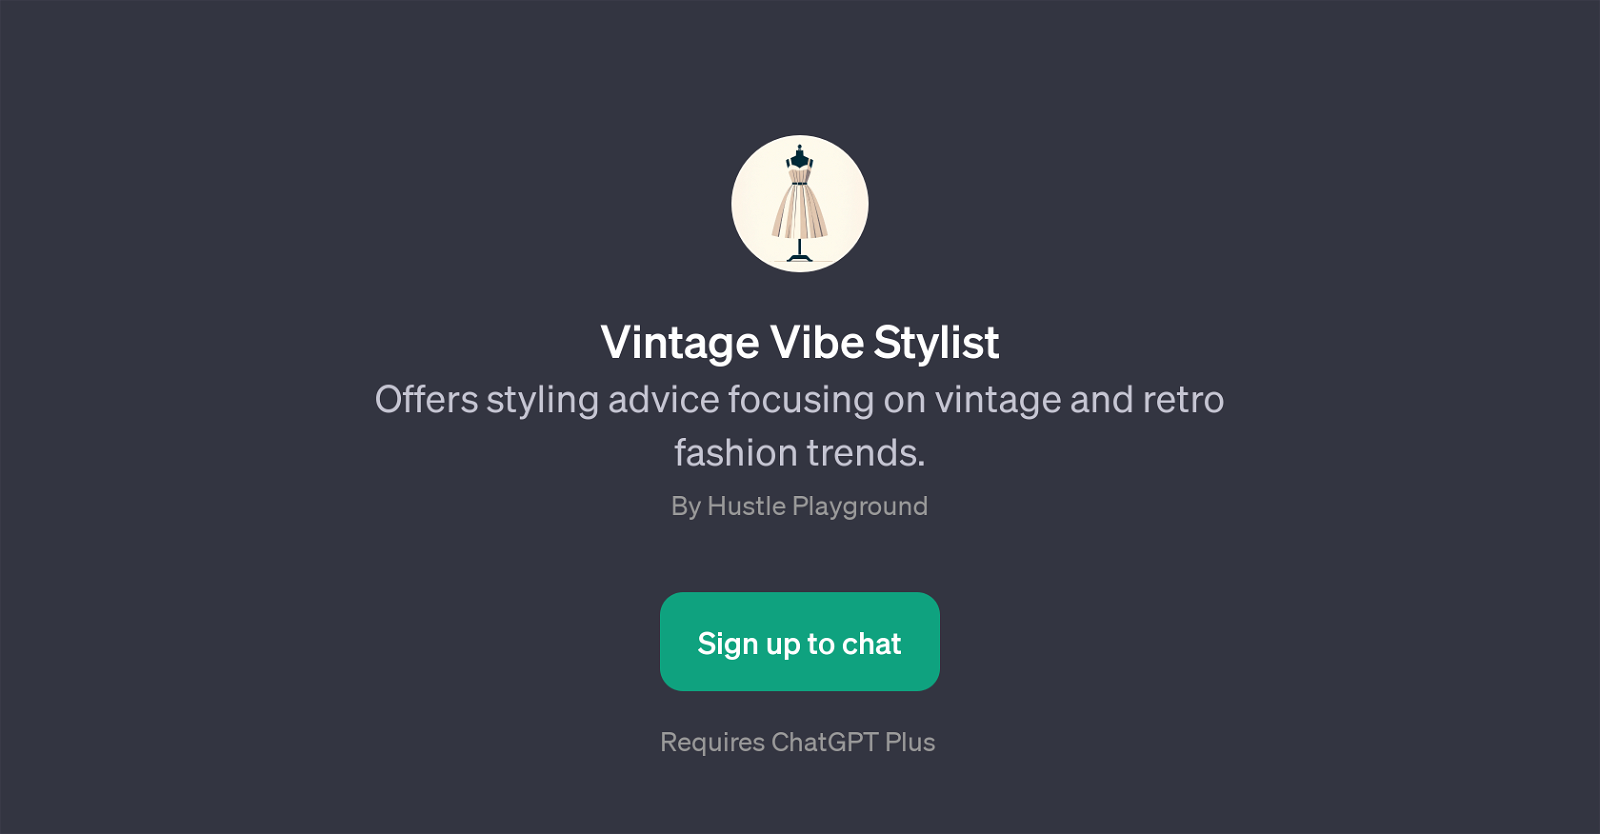 Vintage Vibe Stylist website